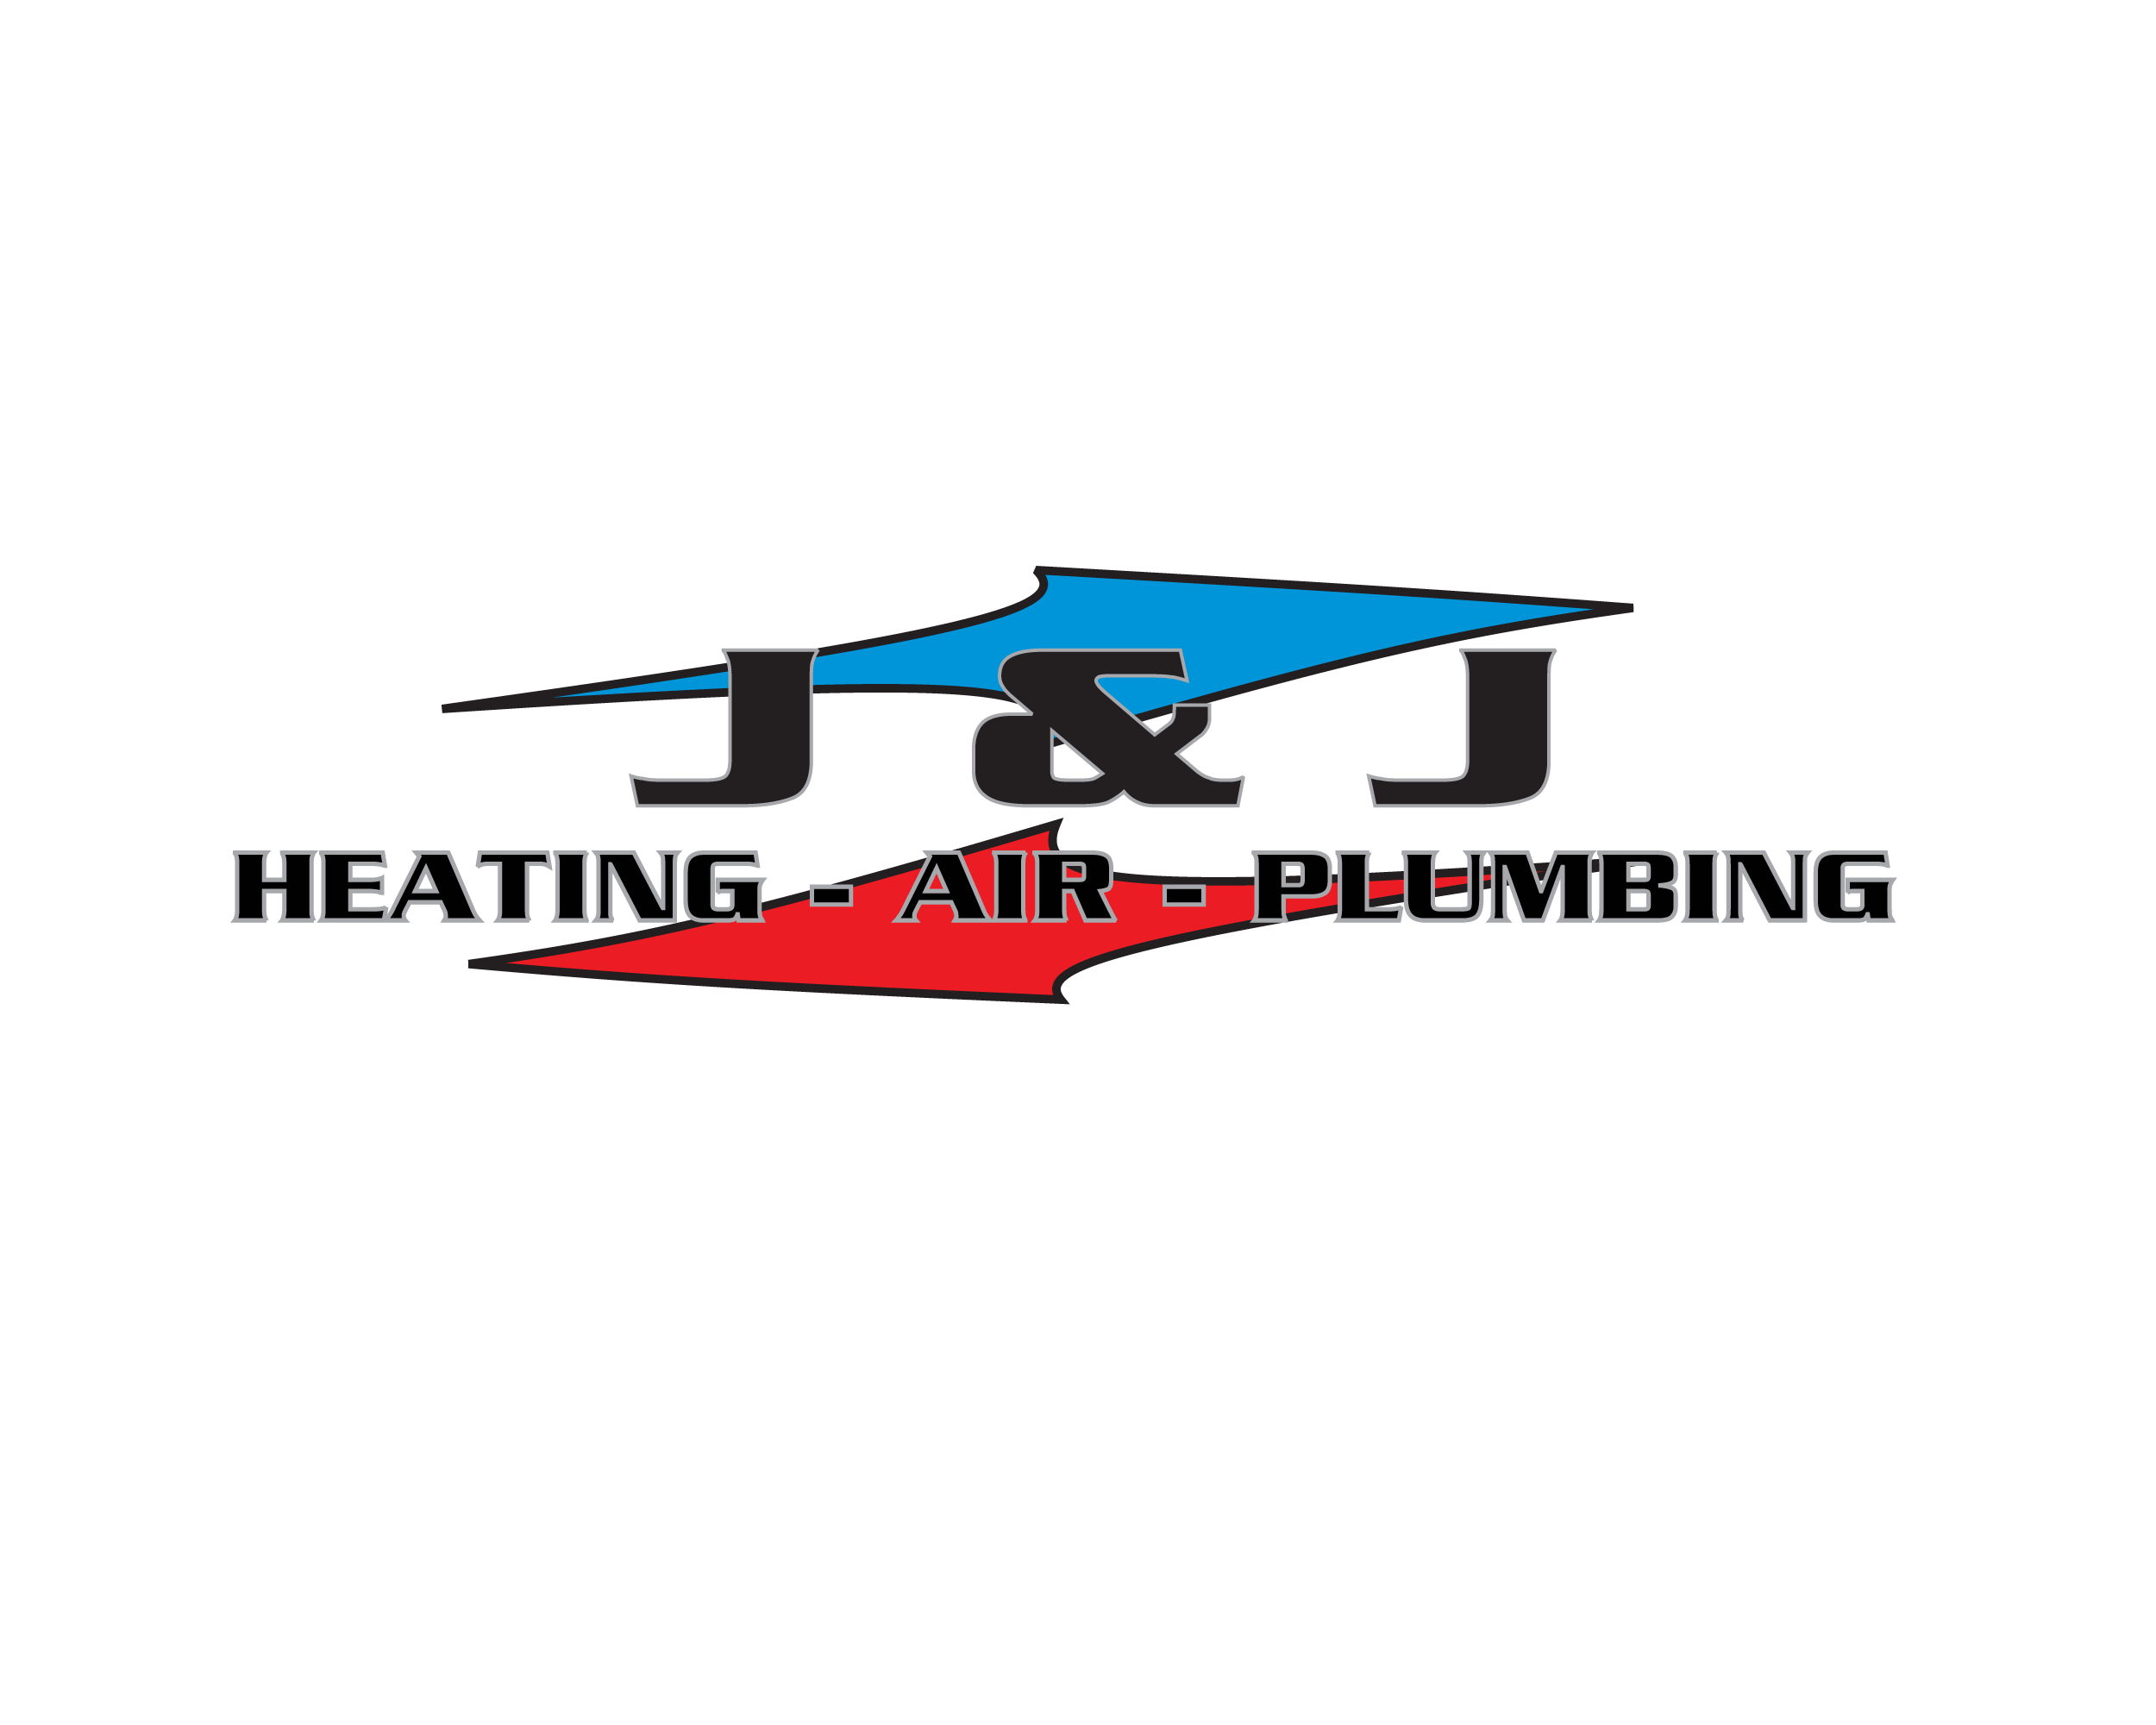 J & J Heating - Air - Plumbing Logo